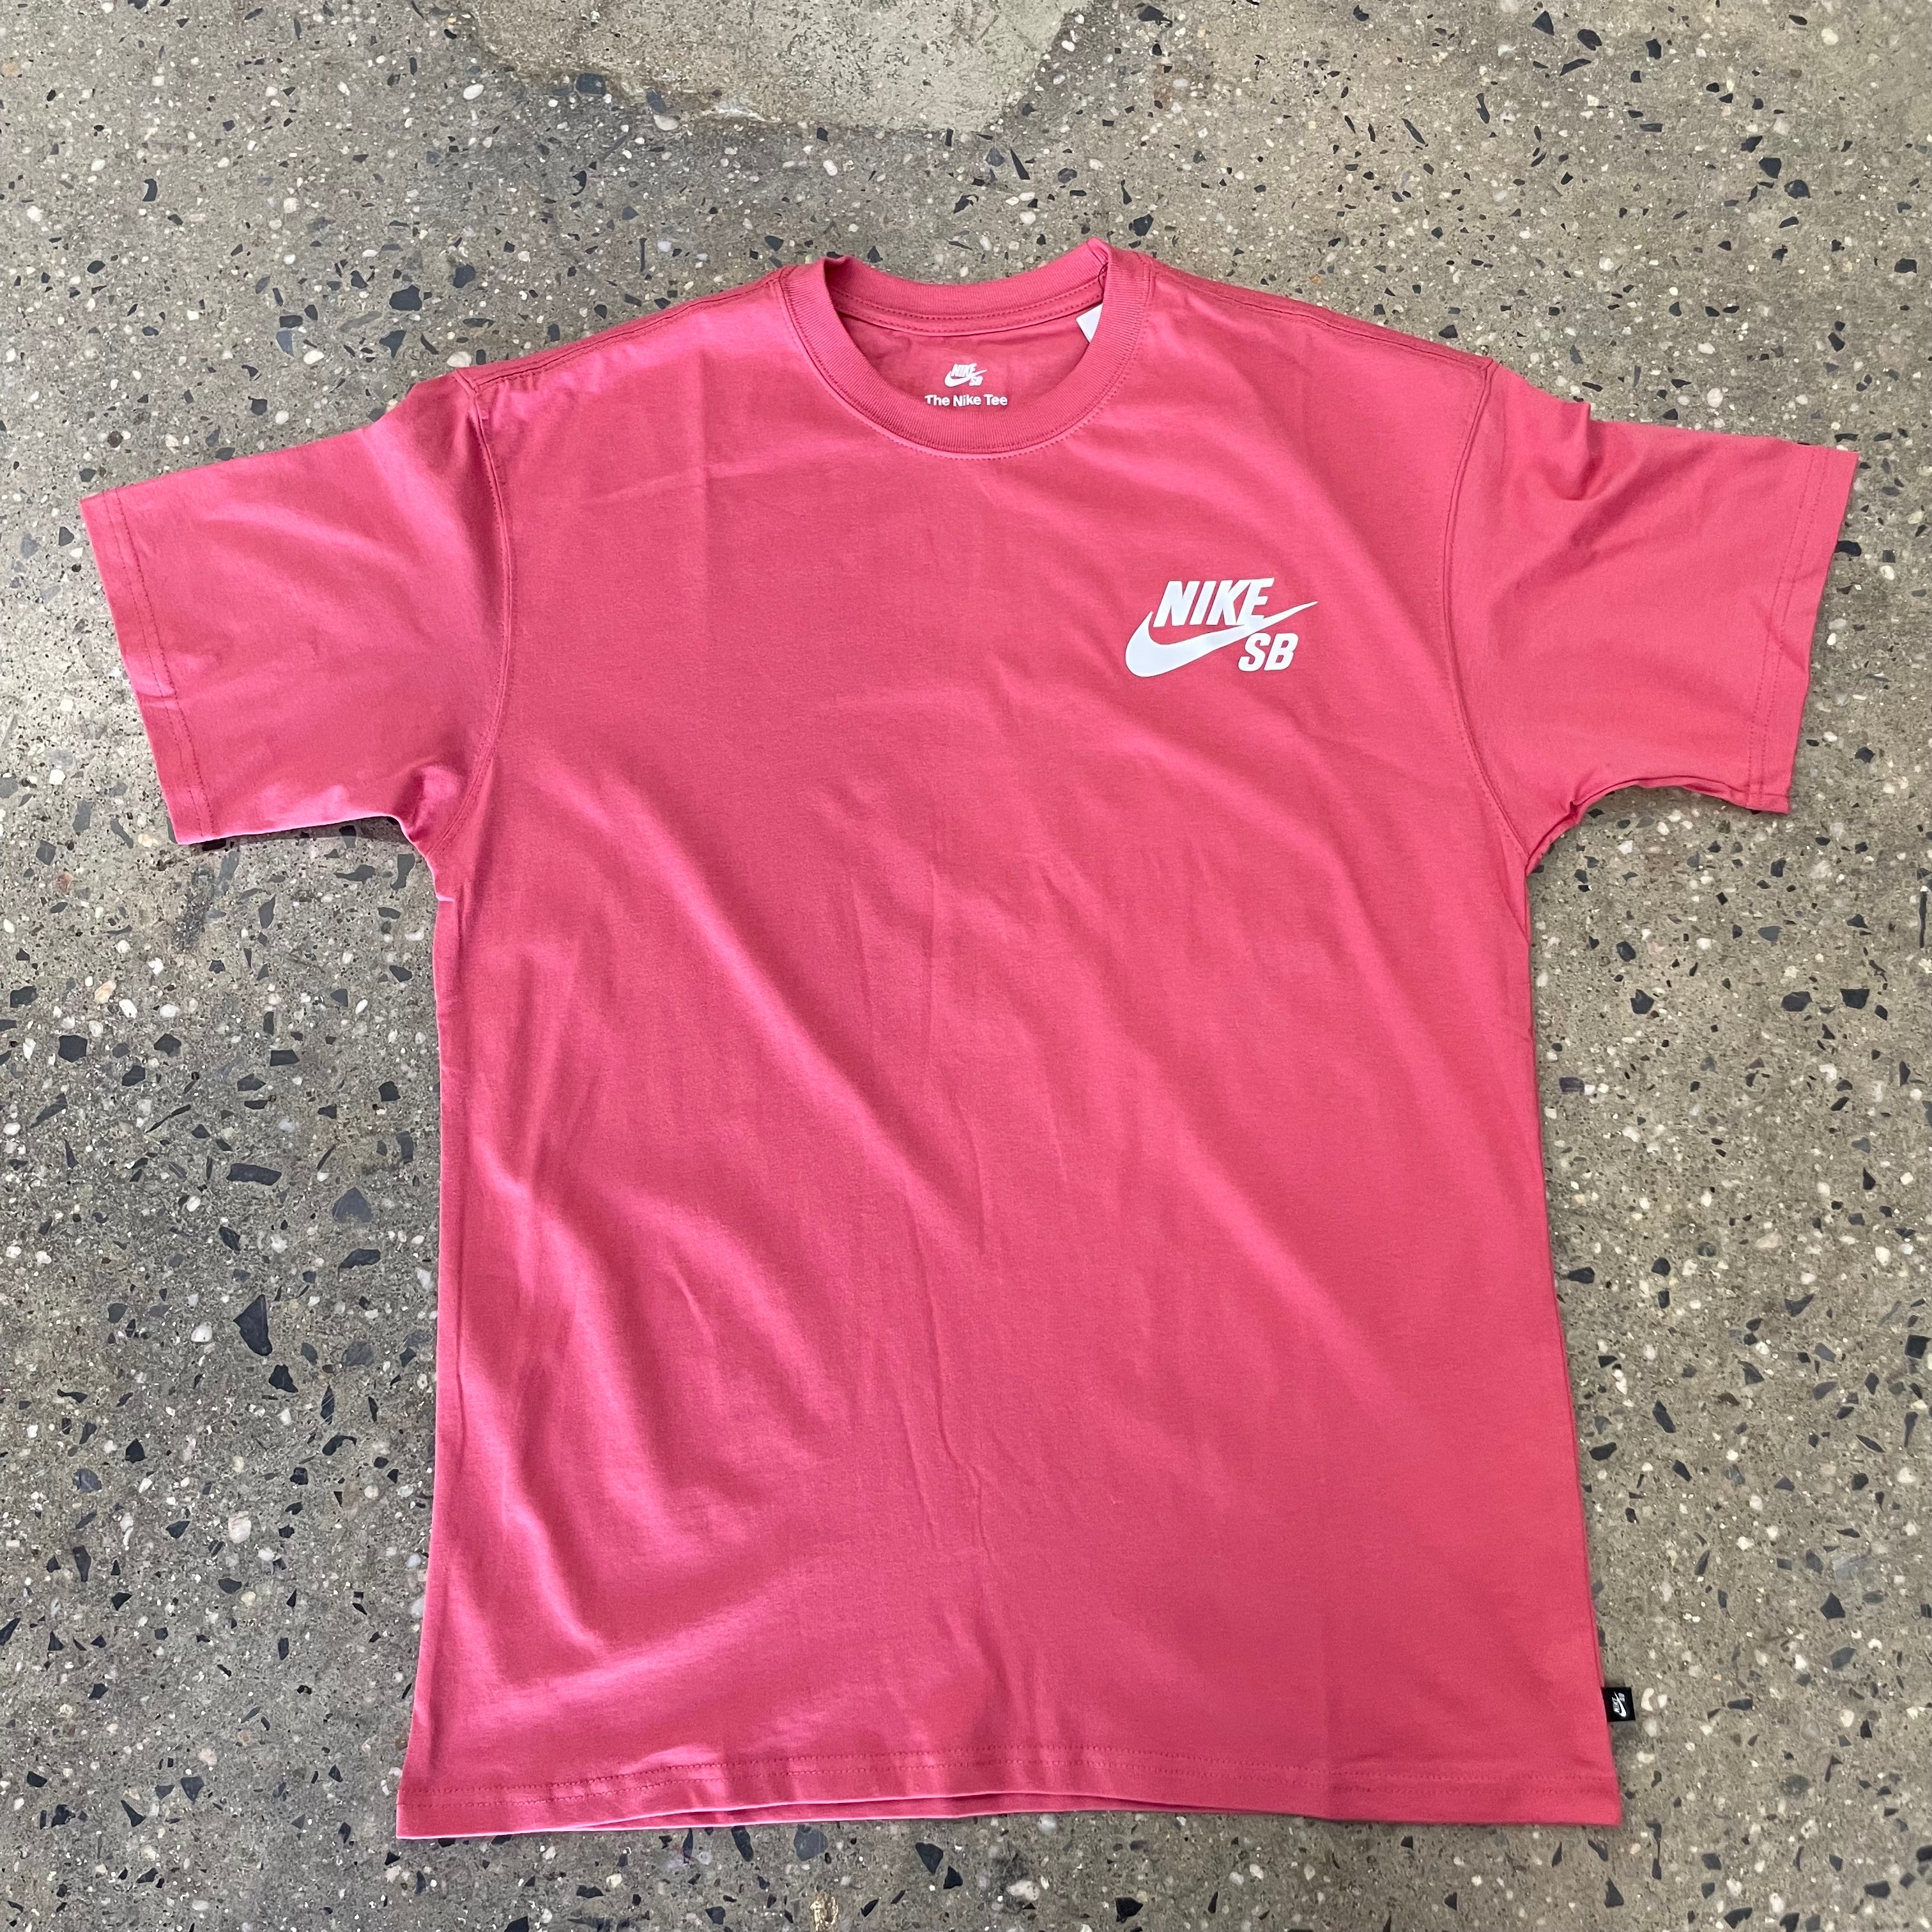 Nike Logo T-Shirt - Adobe - Labor Skateboard Shop